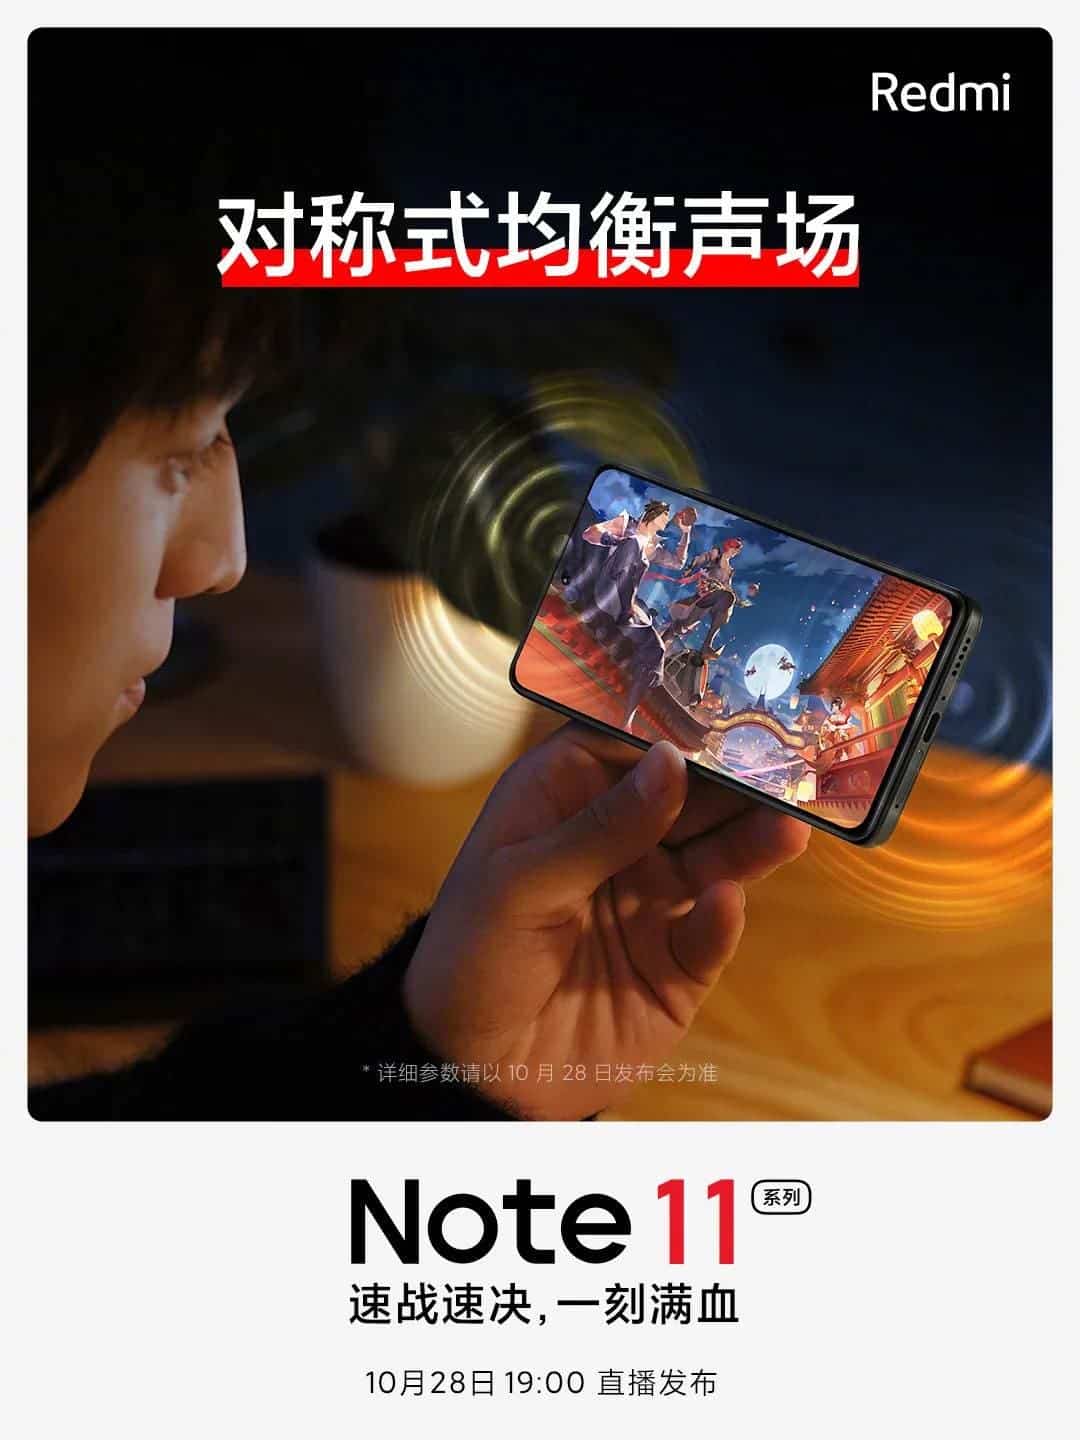 Poster promosi Redmi Note 11 Pro_2